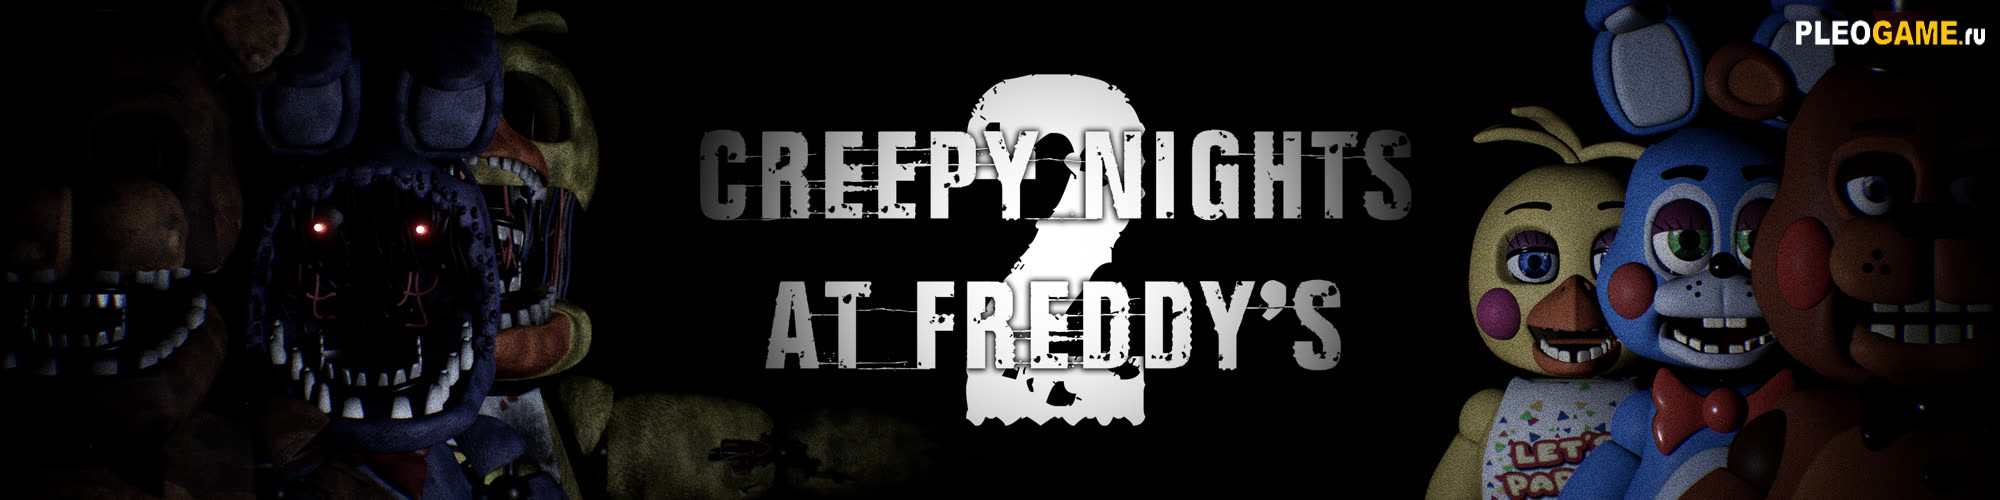 Creepy Nights at Freddy's 2 (CNaF 2)  